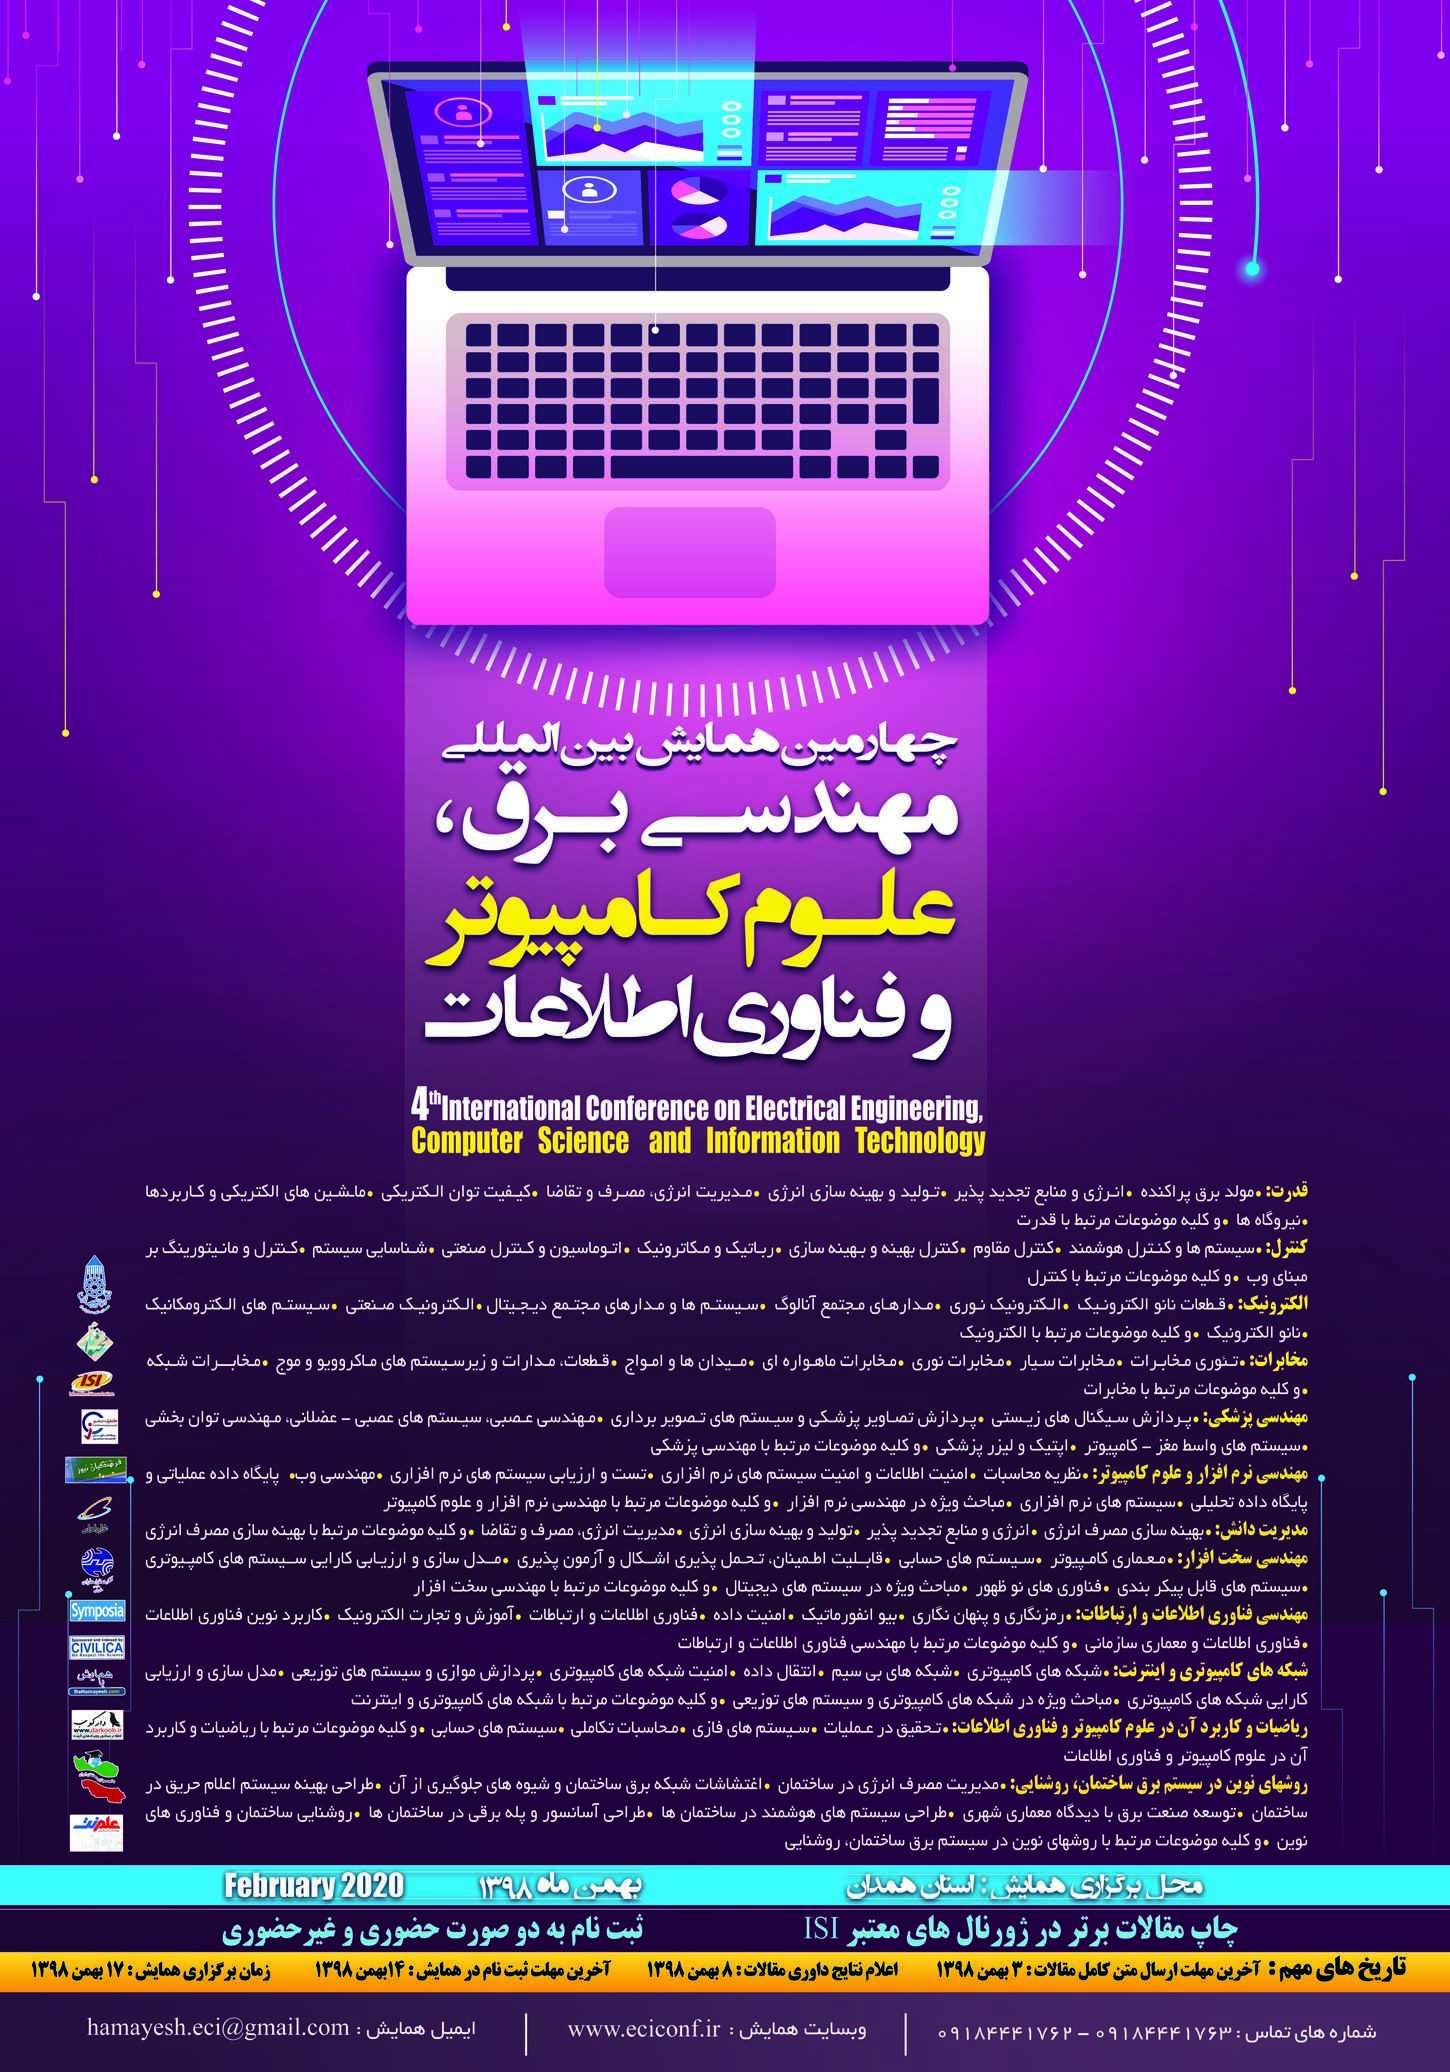 پوستر چهارمین همایش بین المللی مهندسي برق، علوم کامپیوتر و فناوری اطلاعات